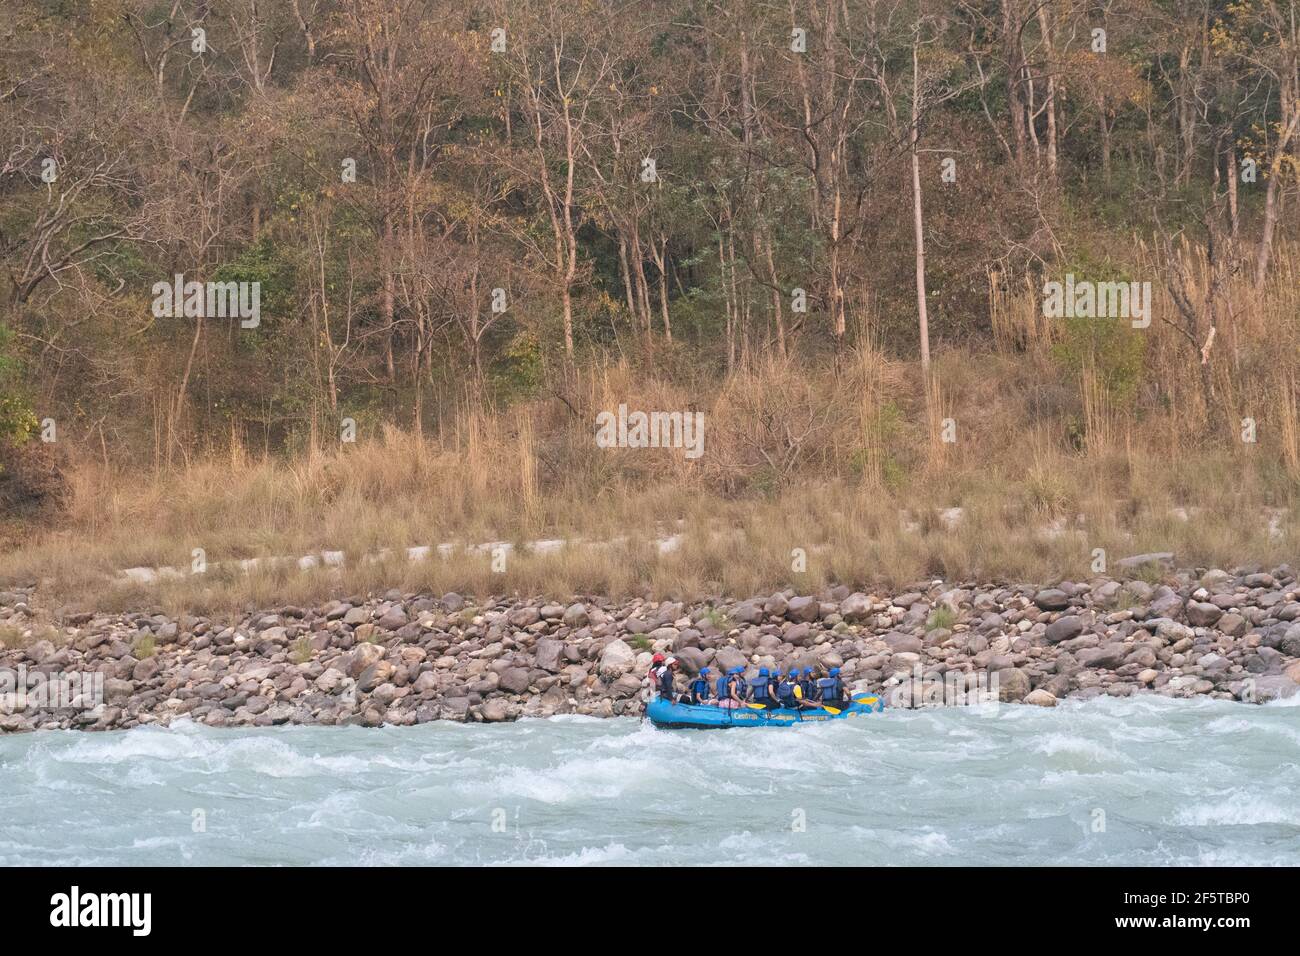 Beim Rafting auf dem Fluss in Rishikesh bewegt sich das Rafting-Boot in seinem eigenen Tempo mit den Wellen des Wassers. Wald bedeckt mit Hügeln und Bäumen dahinter, Stockfoto